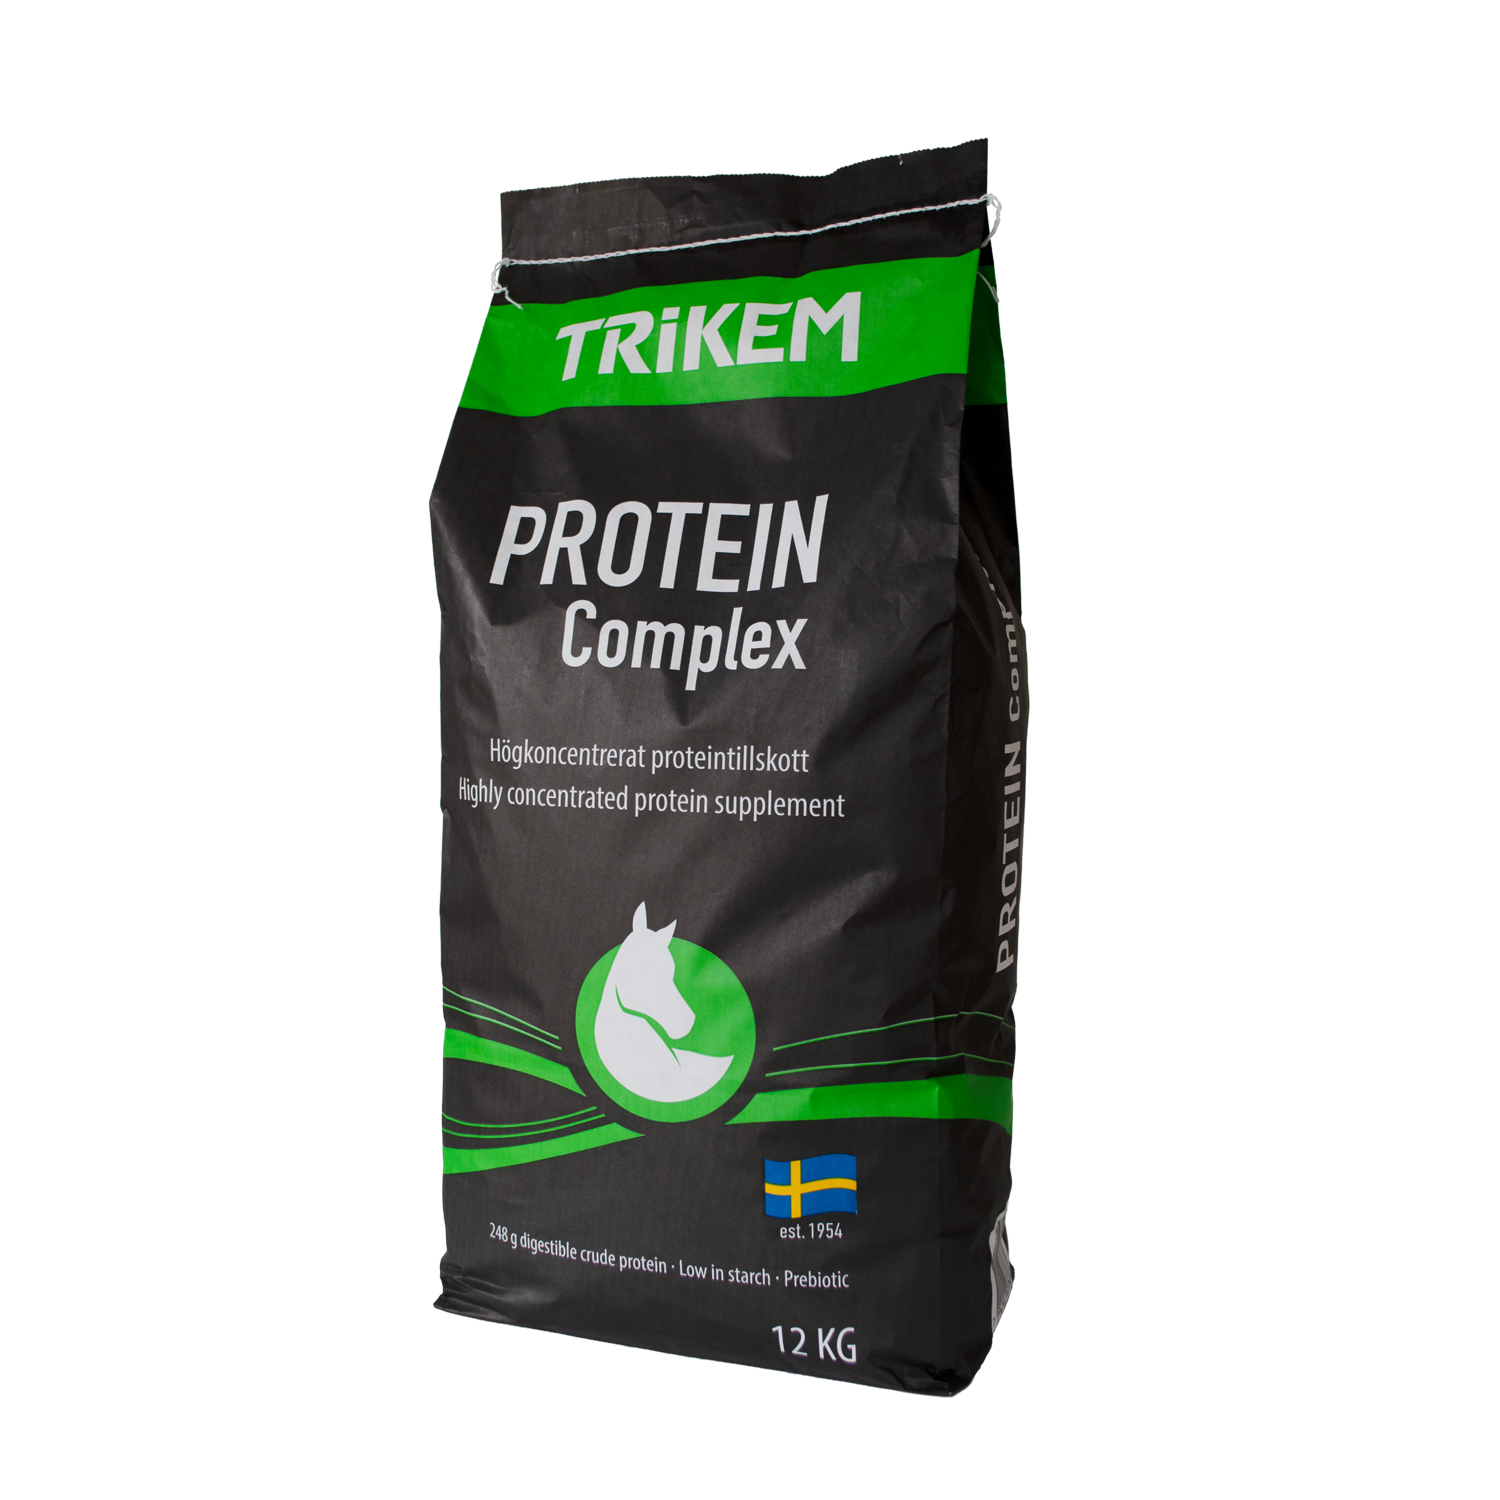 Trikem protein complex 12 kg